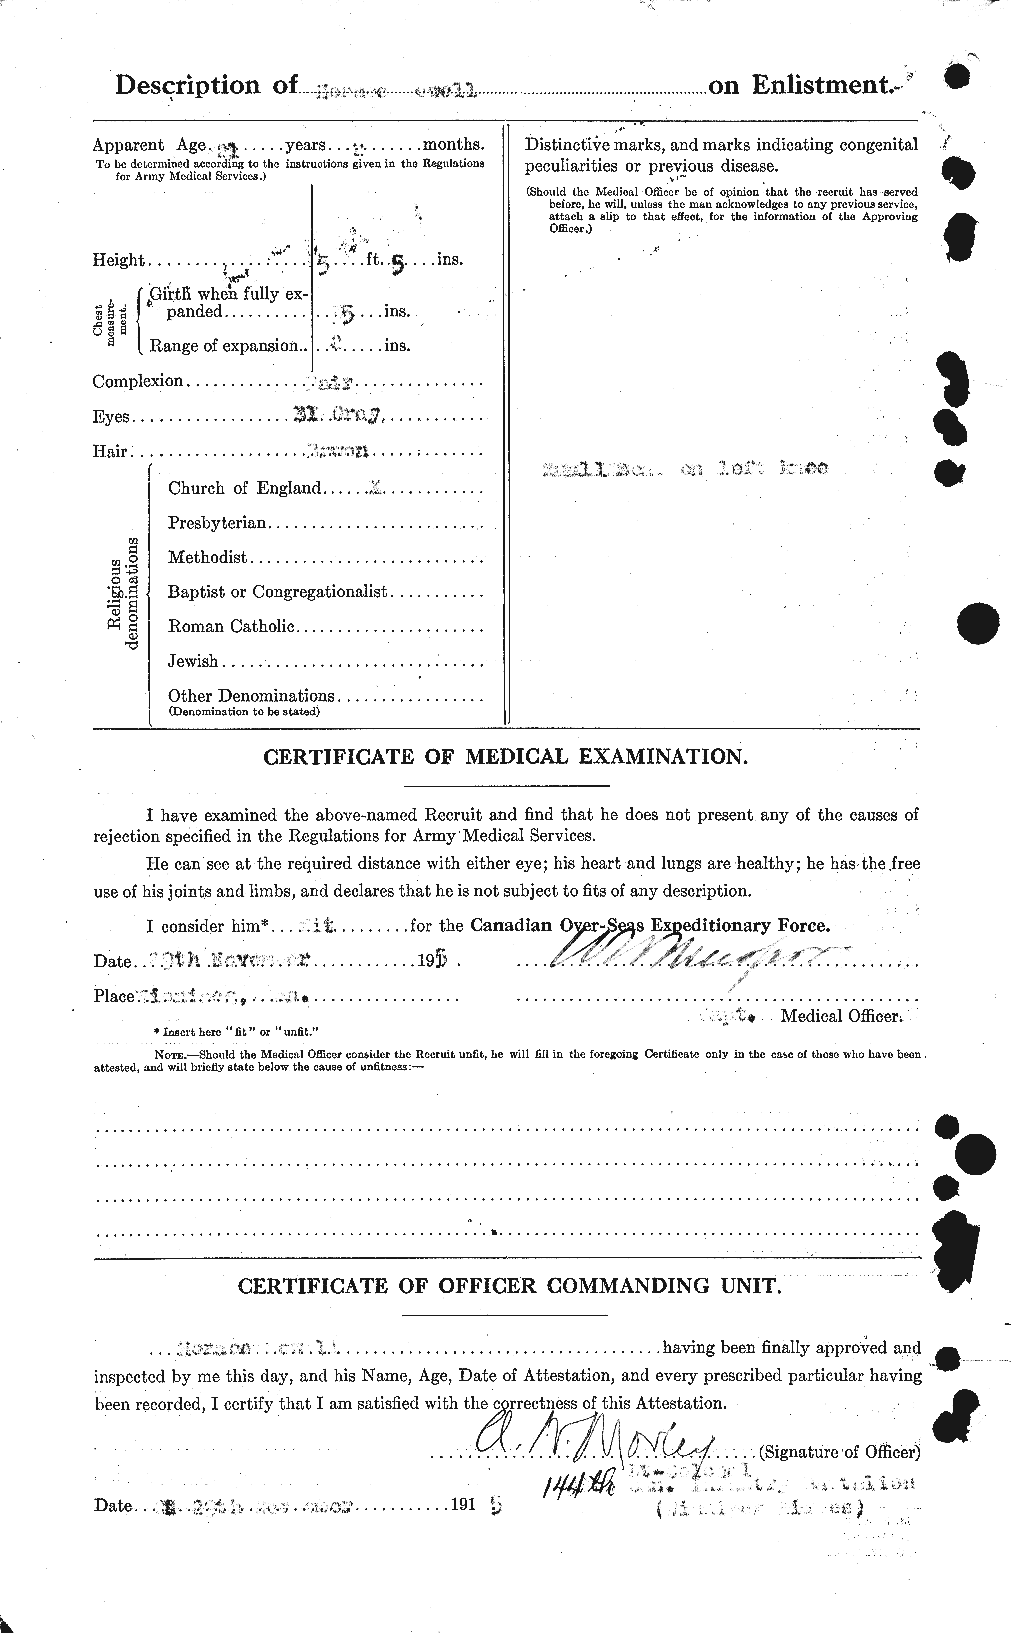 Dossiers du Personnel de la Première Guerre mondiale - CEC 089737b